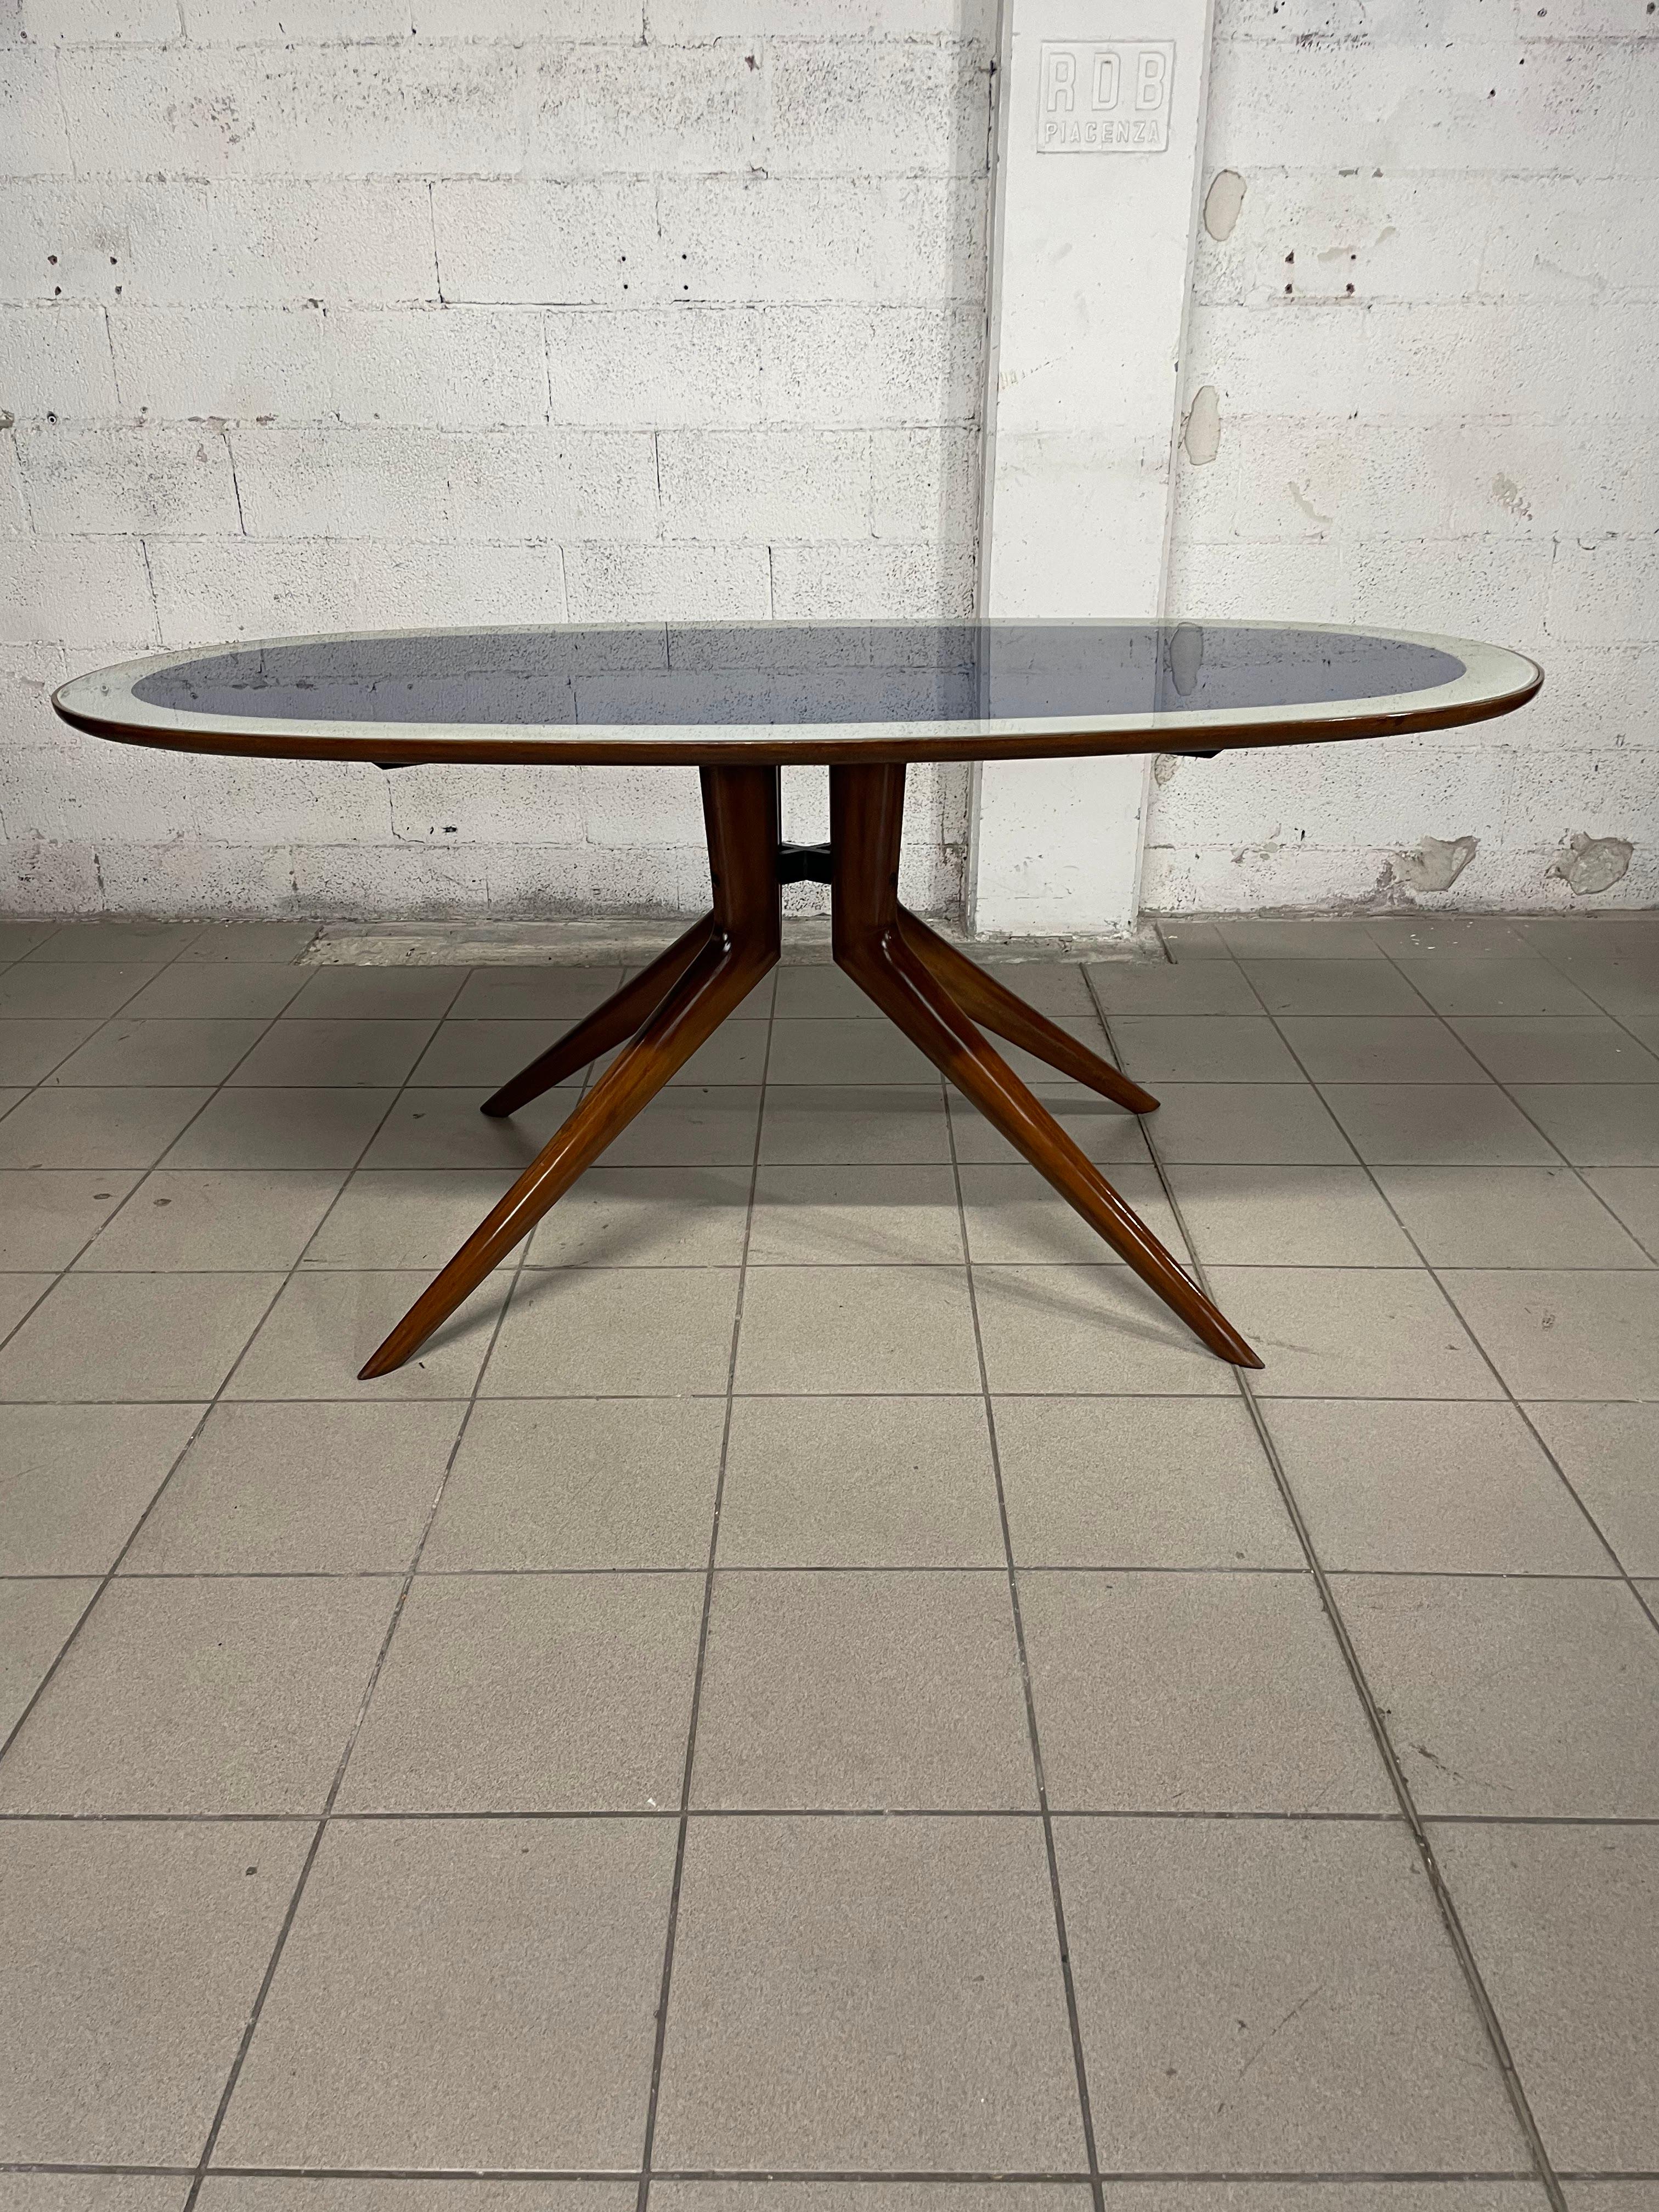 Table ovale des années 1950 avec structure en bois de hêtre poli et plateau en verre bicolore.

Elégant et adapté à tous les environnements.

Nous attirons l'attention sur le fait que le papier coloré situé sous le verre a souffert de l'humidité au